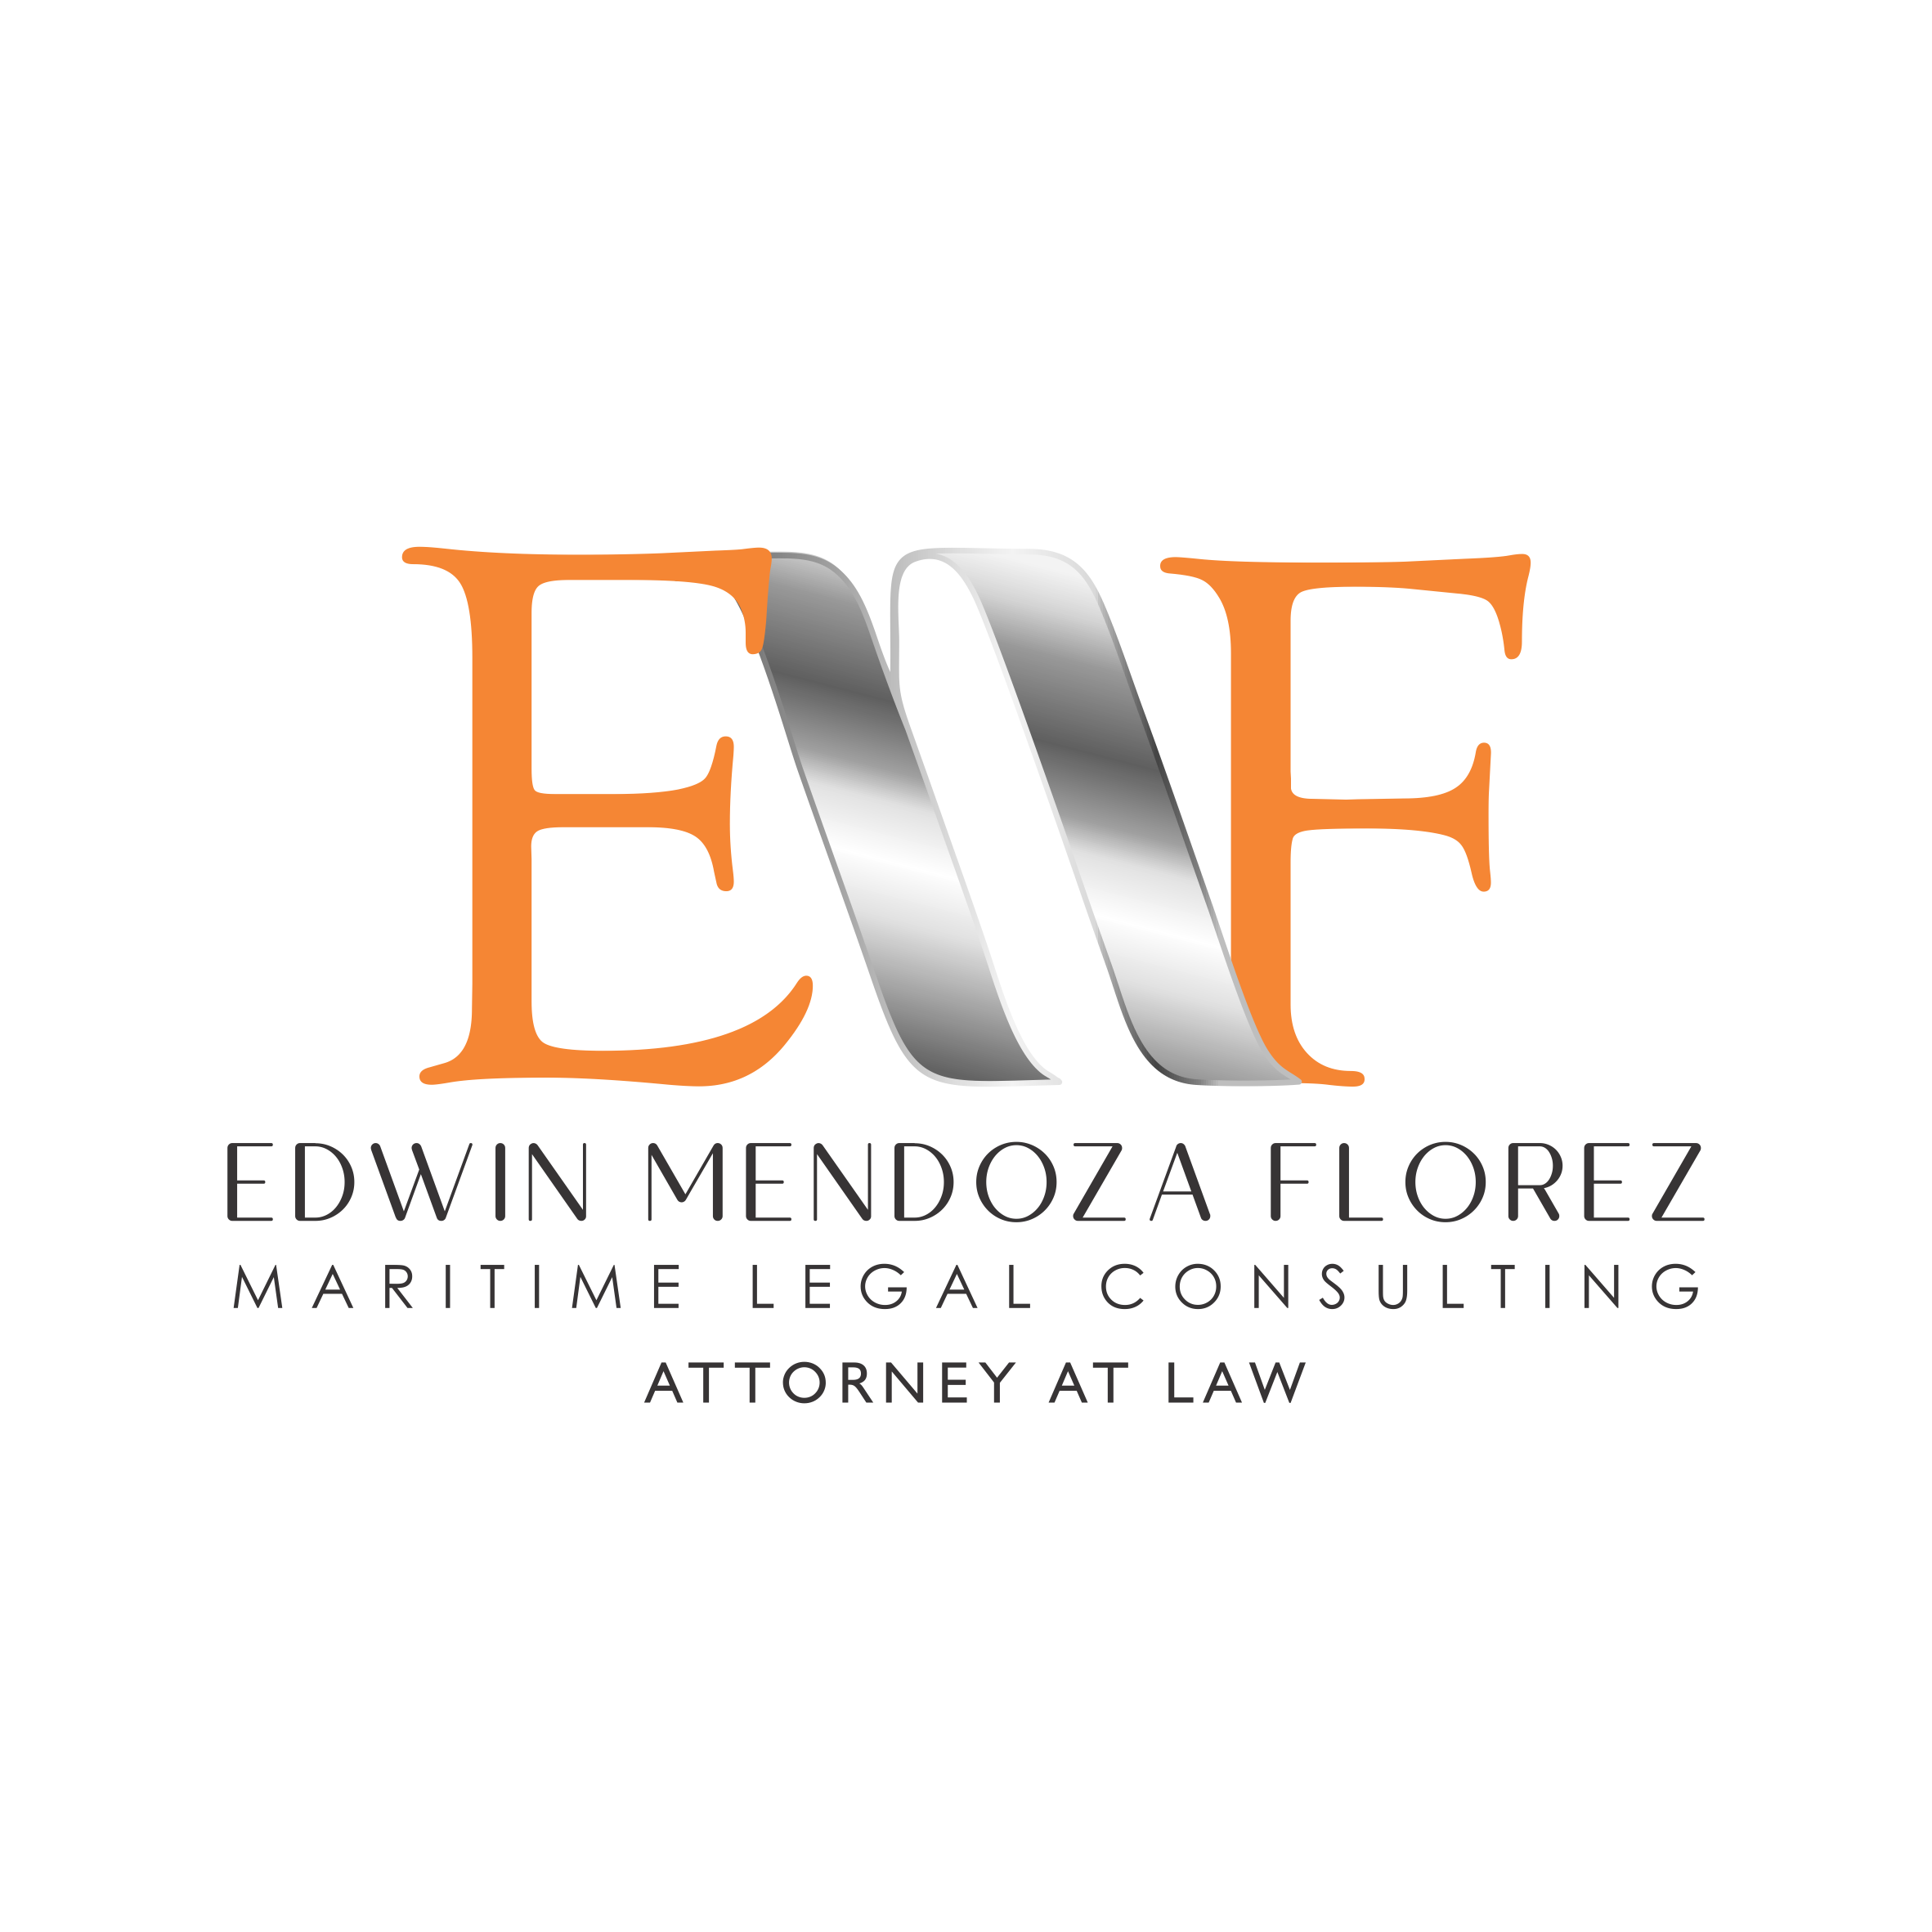 EDWIN MENDOZA FLORES